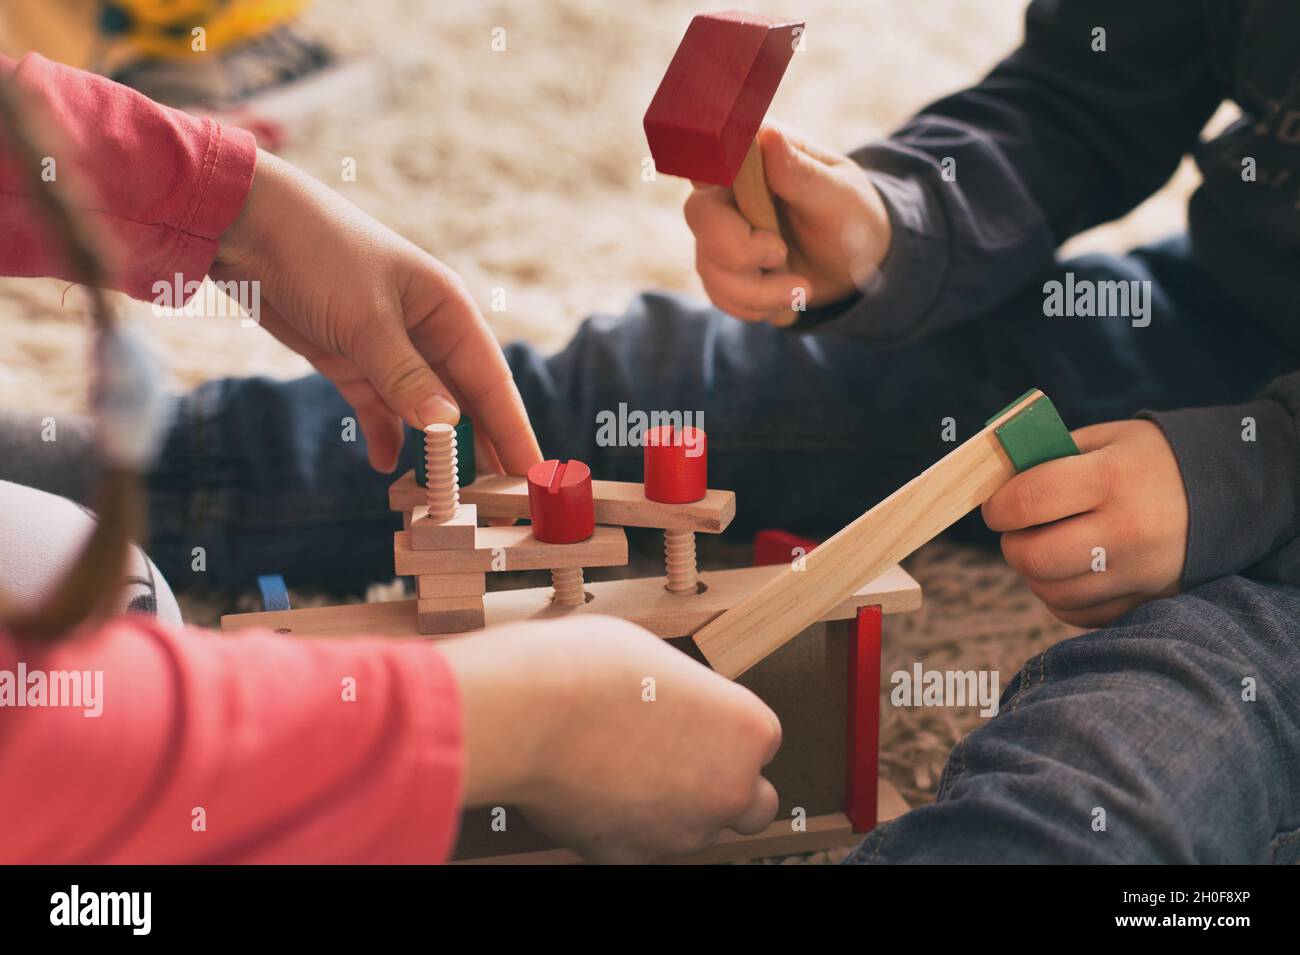 Niño y niña jugando con juguetes de madera en la alfombra. Primer plano de las manos que practican habilidades motoras con herramientas de trabajo Foto de stock